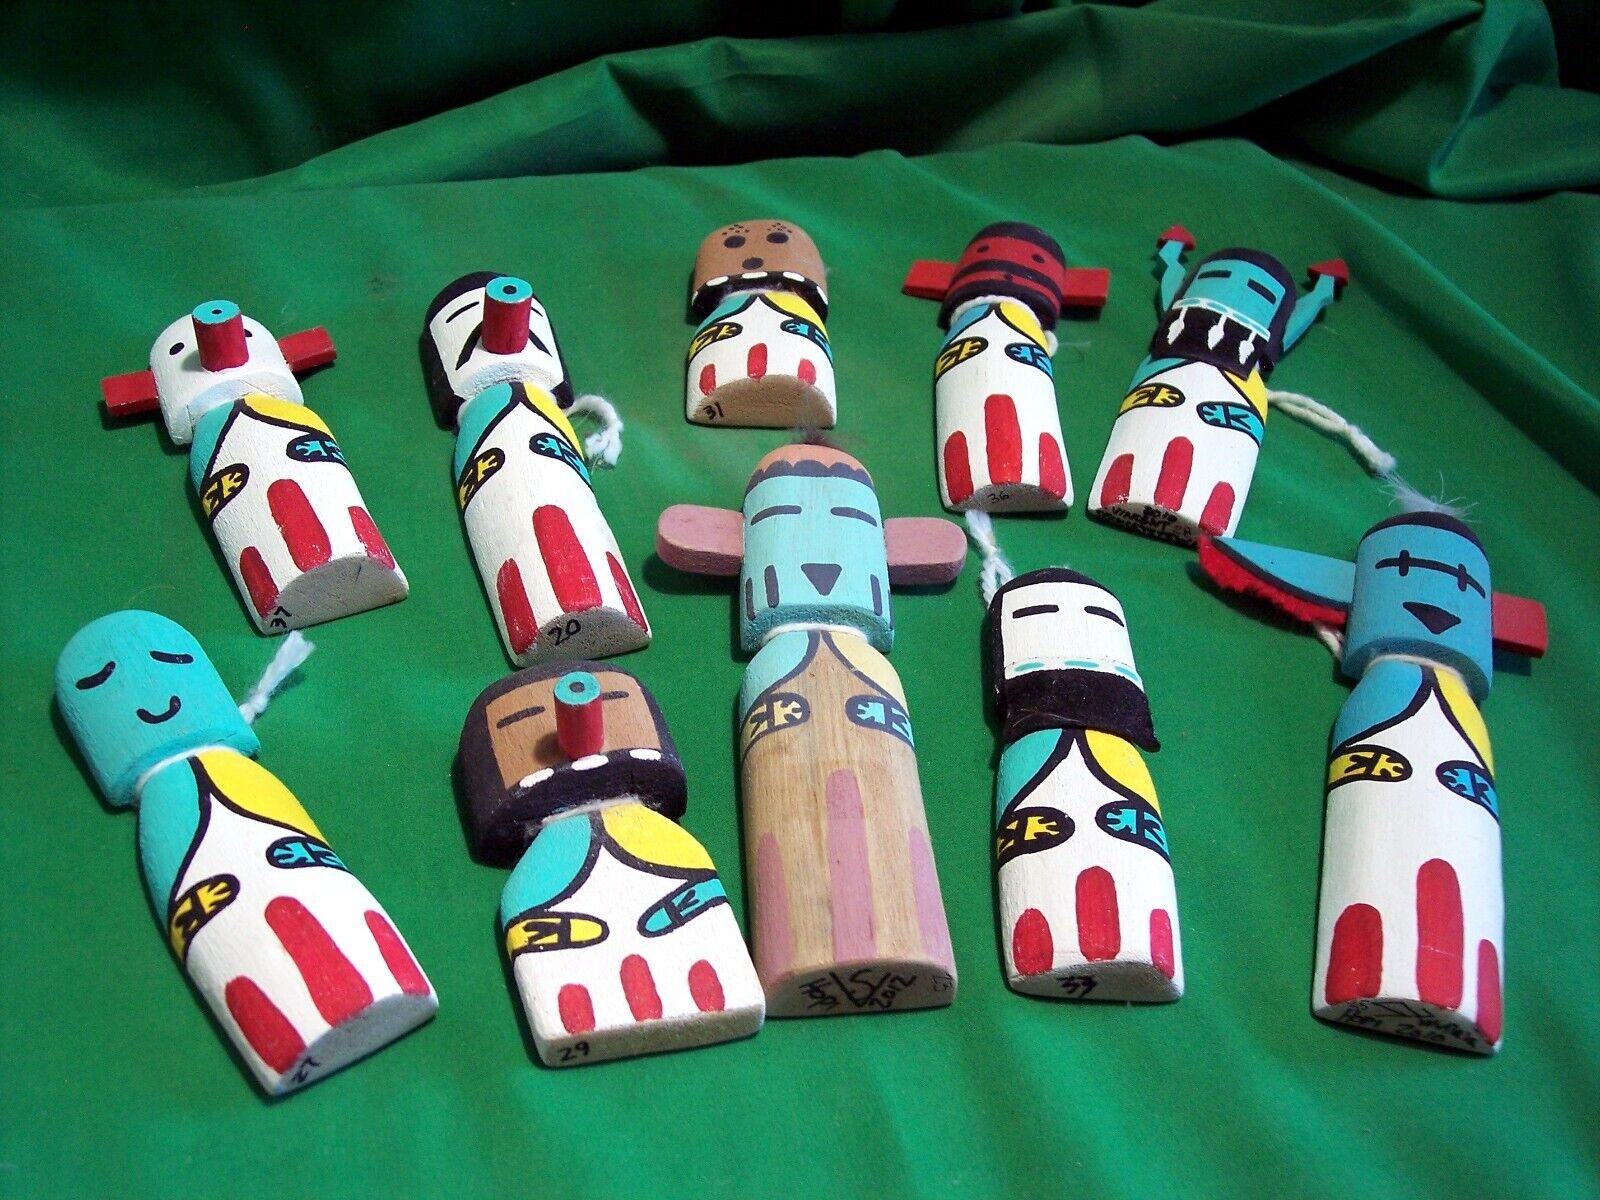 Hopi Kachina Dolls - Attack of the Cradle Kachinas 10 Kachina Dolls - Great